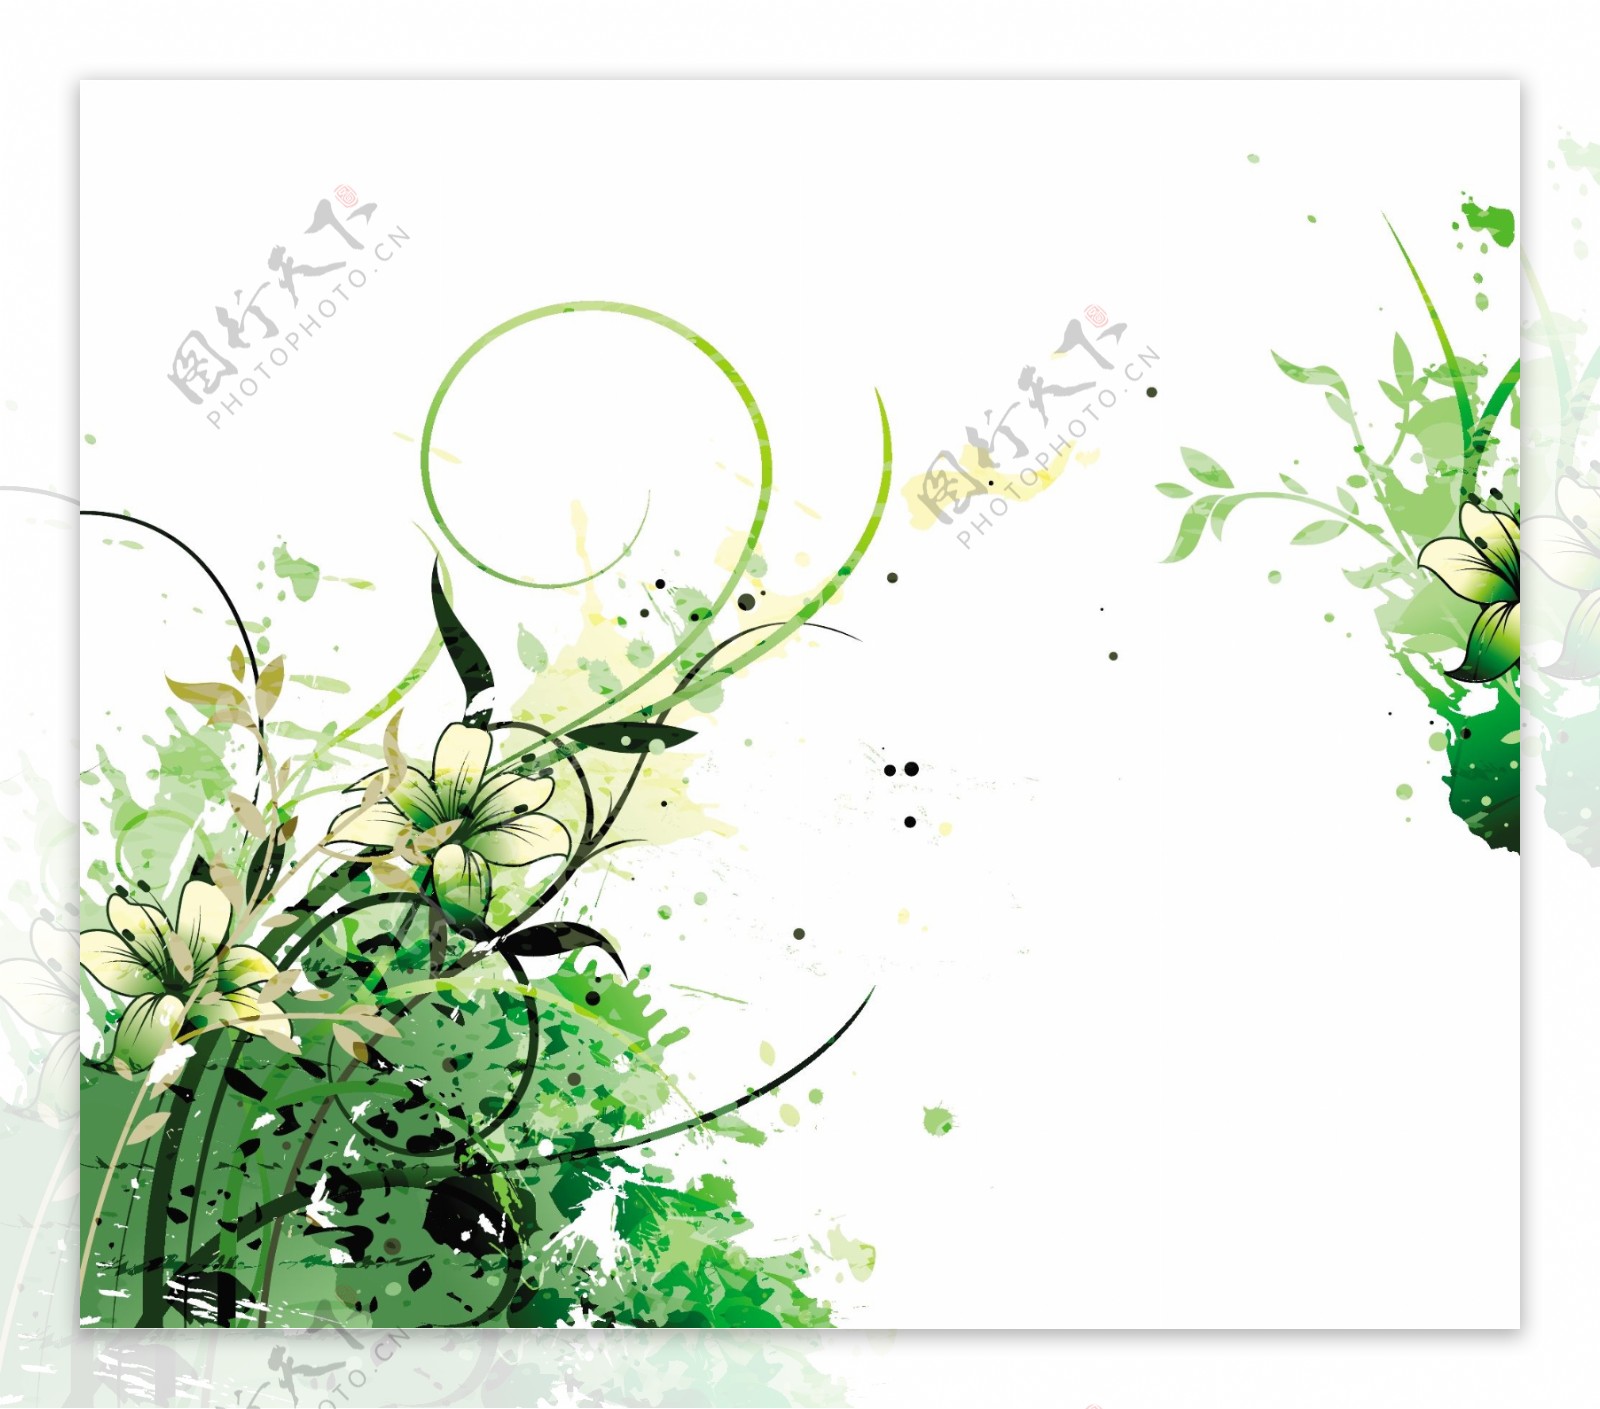 绿色植物卷纹花朵背景